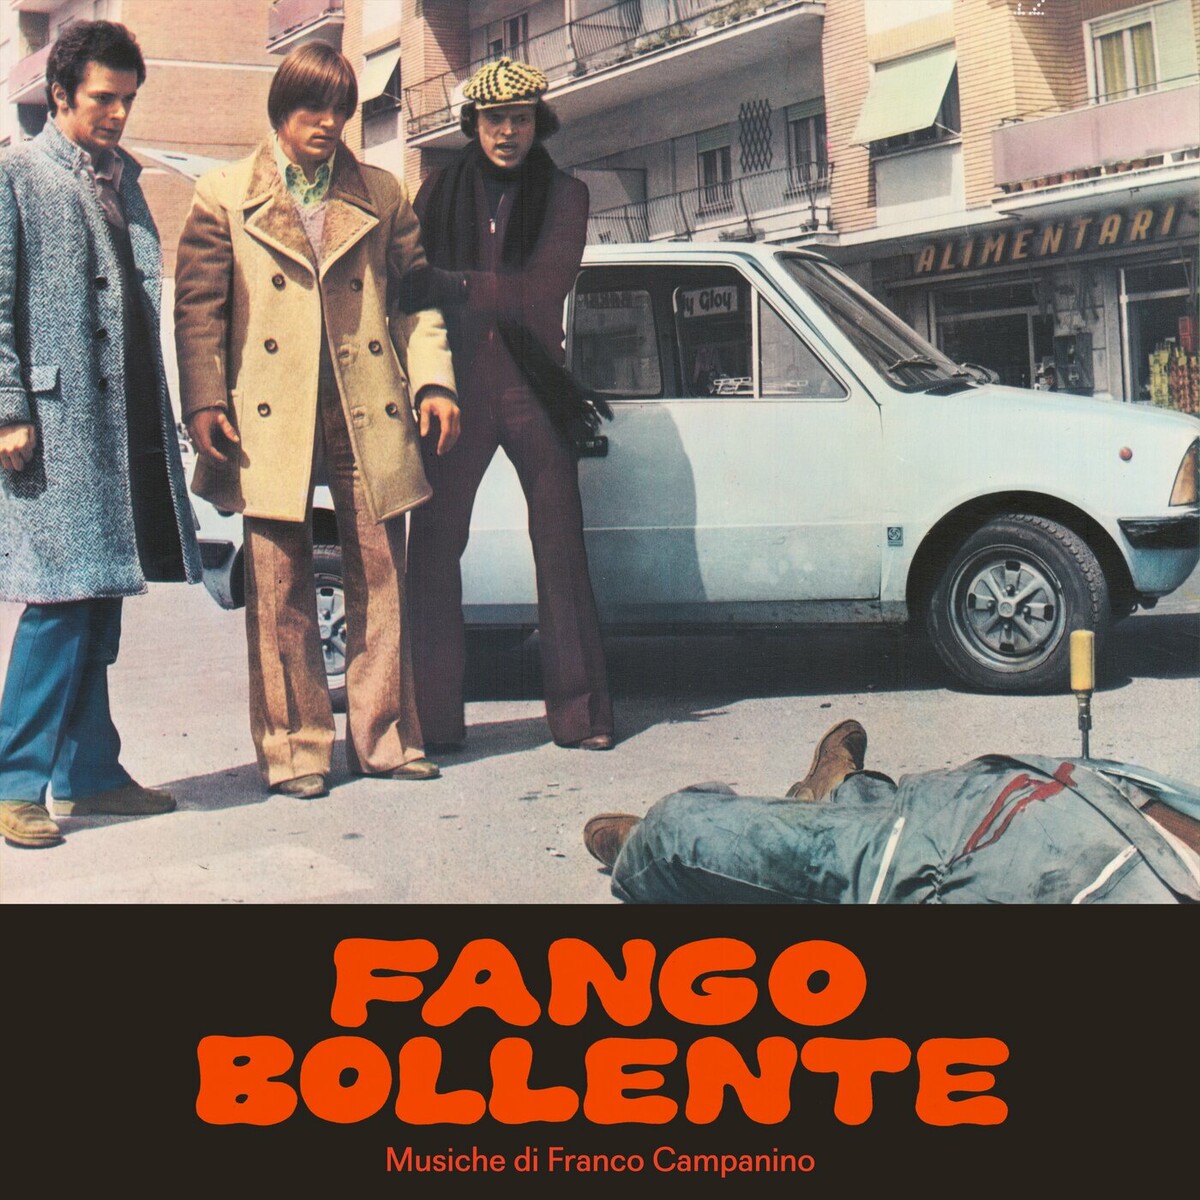 Fango Bollente Soundtrack (by Franco Campanino) -- Seeders: 1 -- Leechers: 0